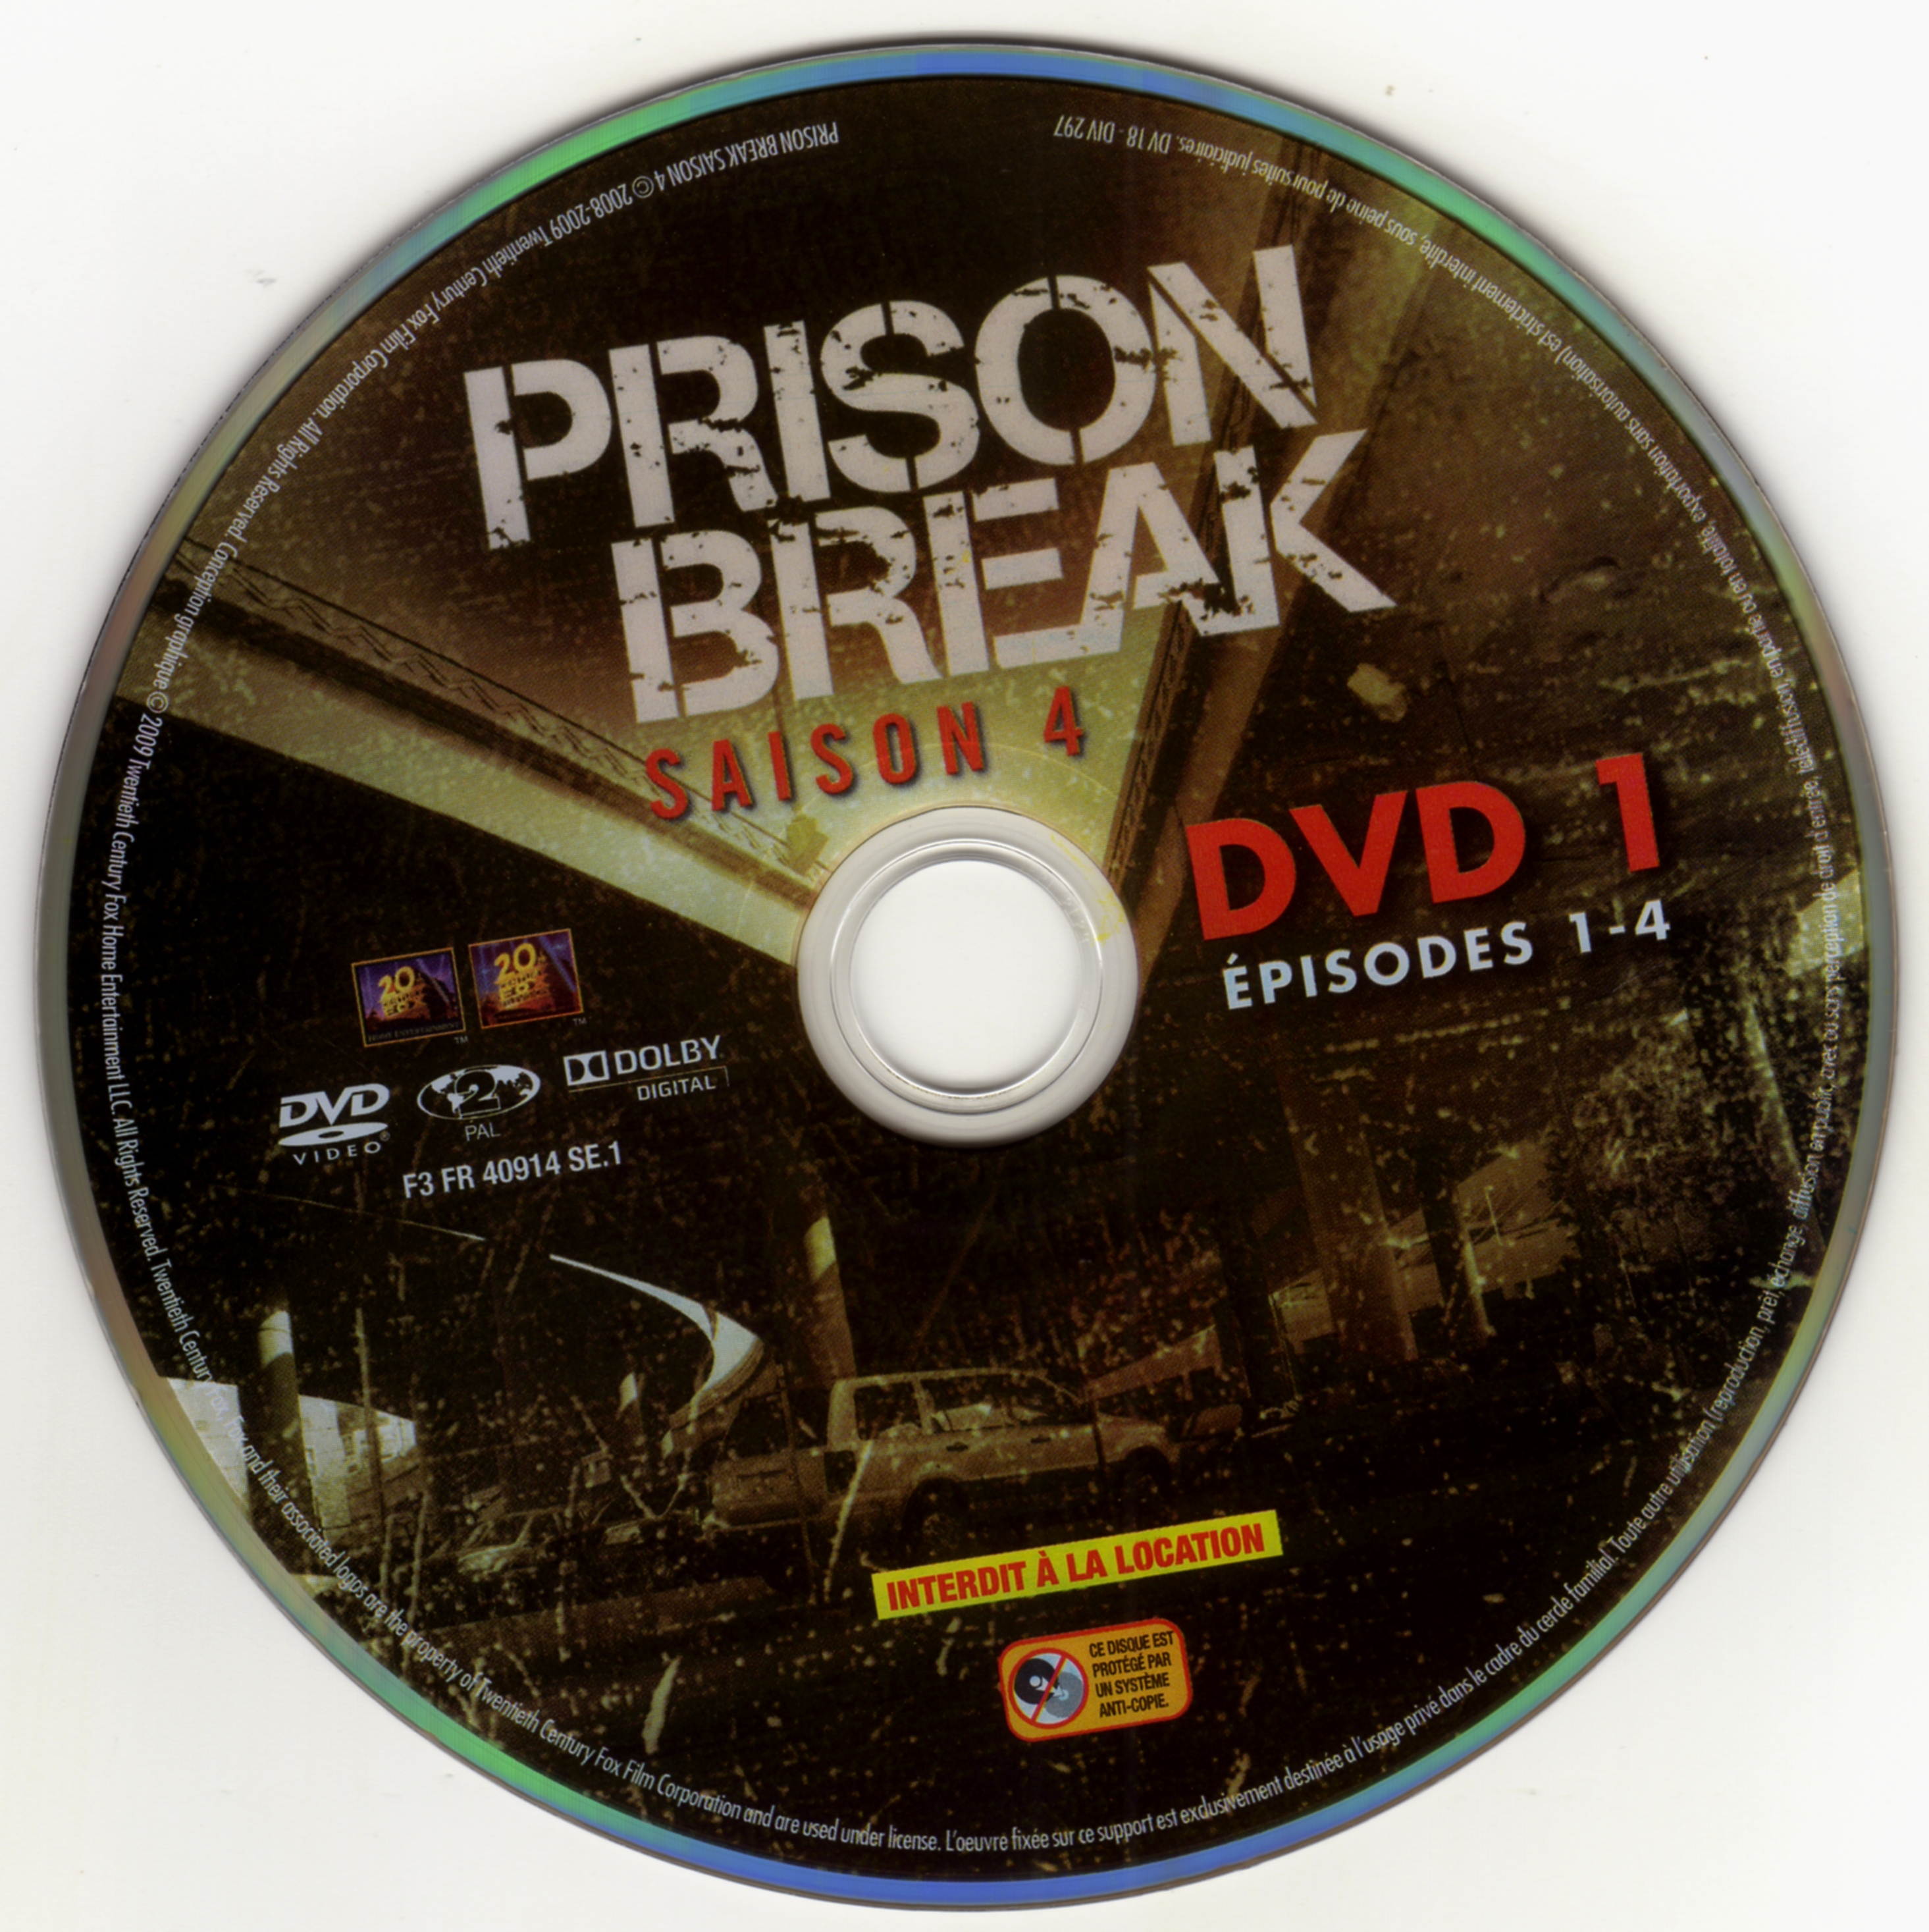 Prison break saison 4 DVD 1